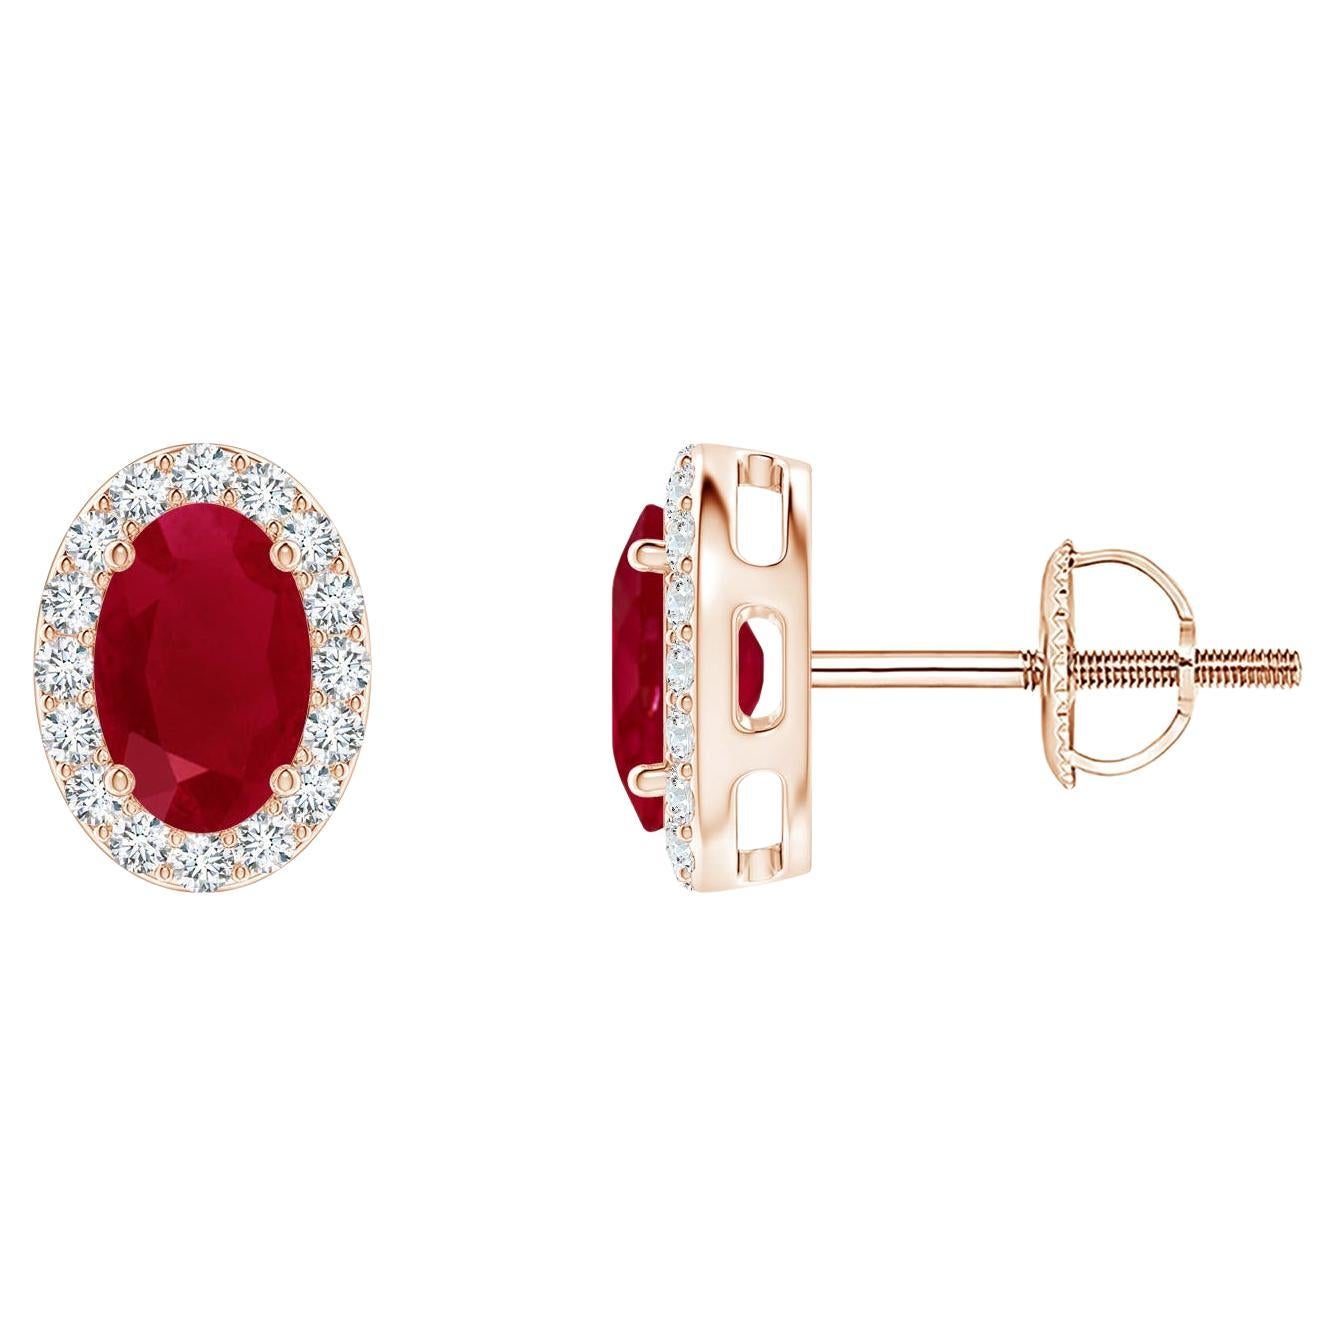 ANGARA clous de rubis ovales naturels de 1,20 carat avec halo de diamants en or rose 14 carats